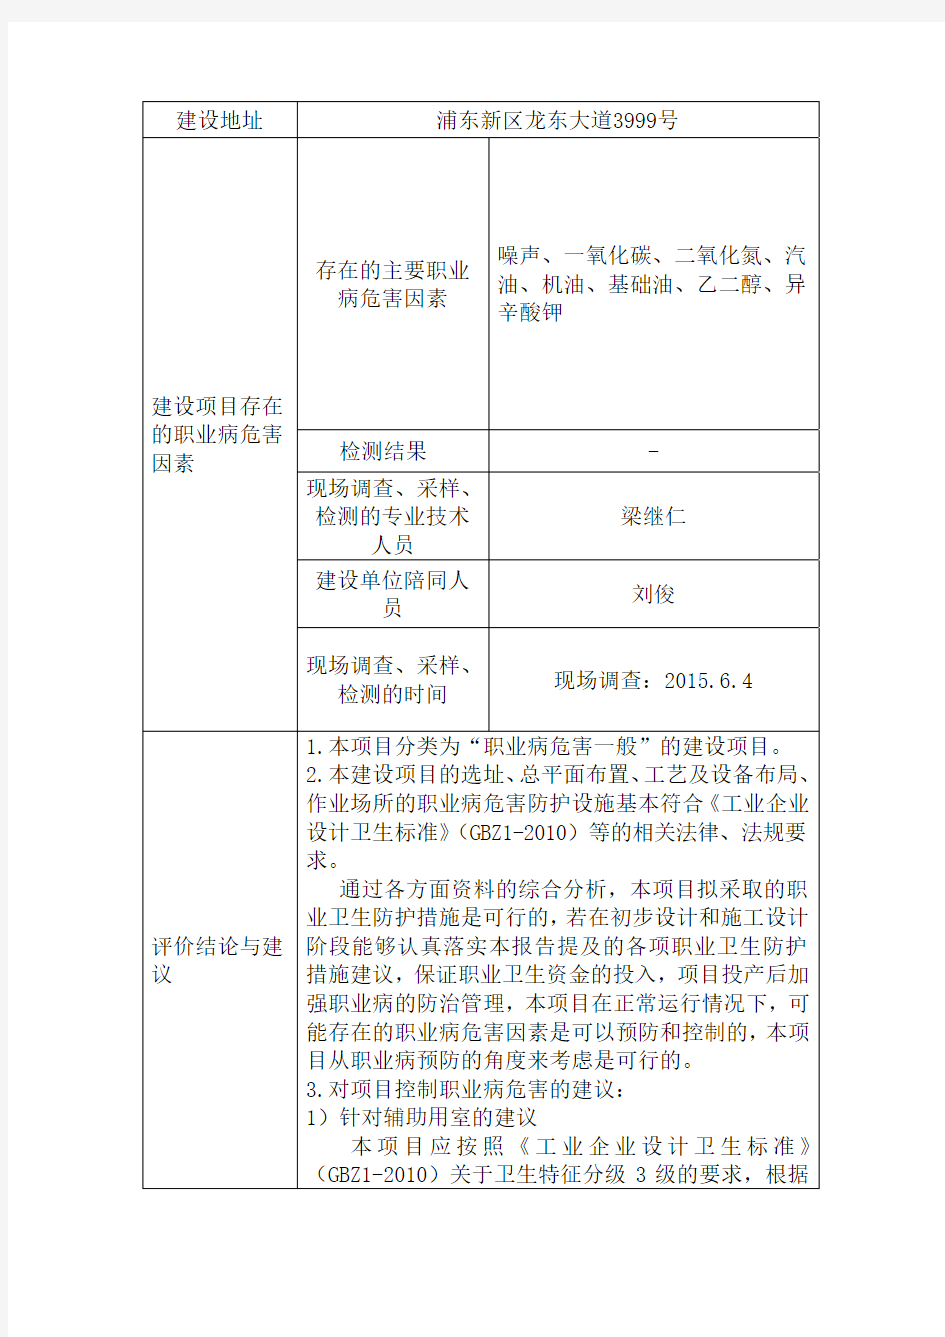 网上公开评价报告信息表上海通用汽车有限公司上海通用汽车